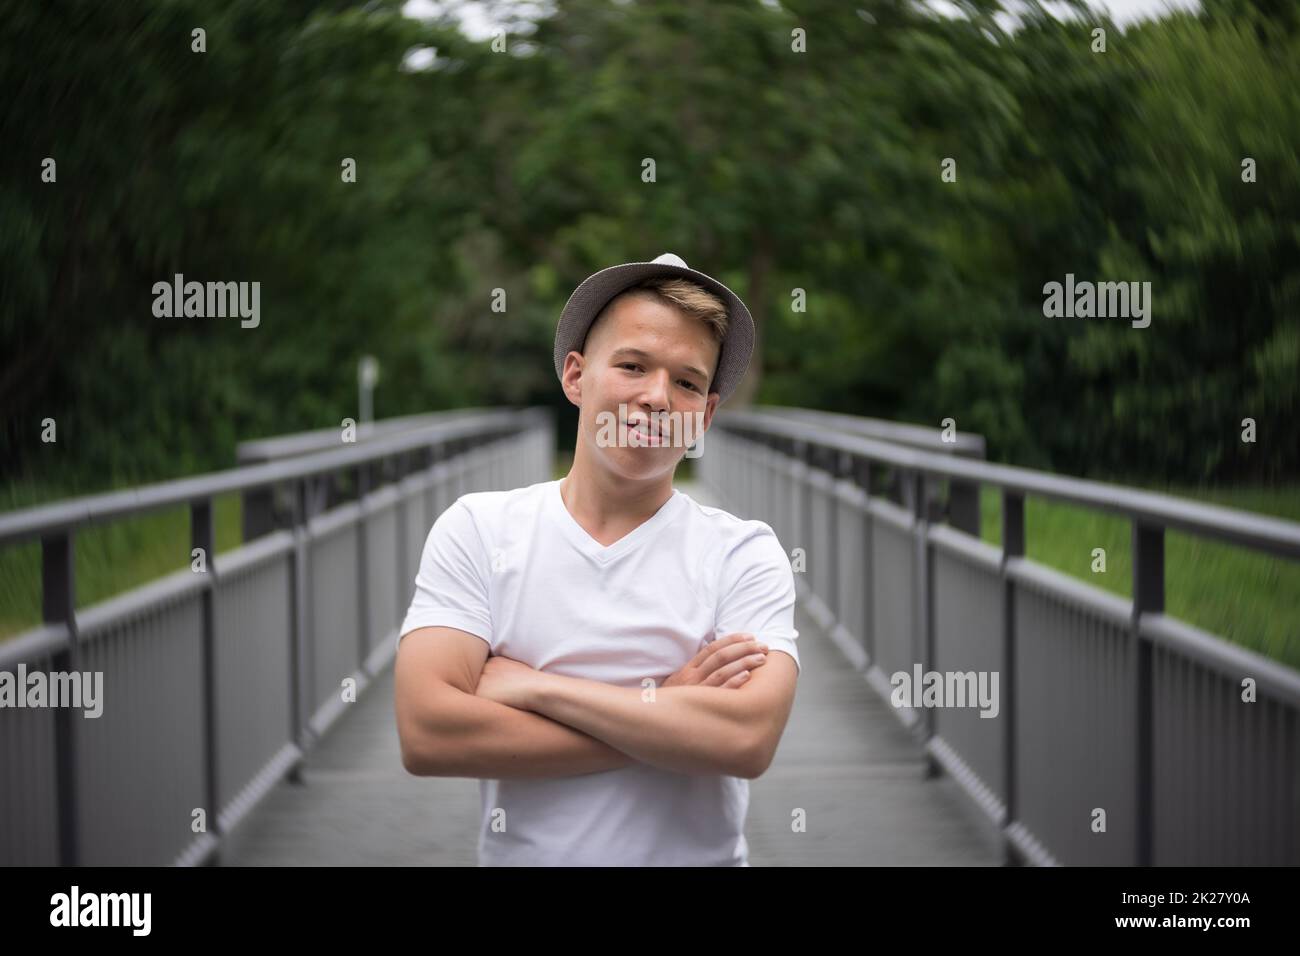 Porträt eines Teenagers, der auf einer Brücke steht. Natürliche Gesichtshaut, ohne Retusche. Stockfoto